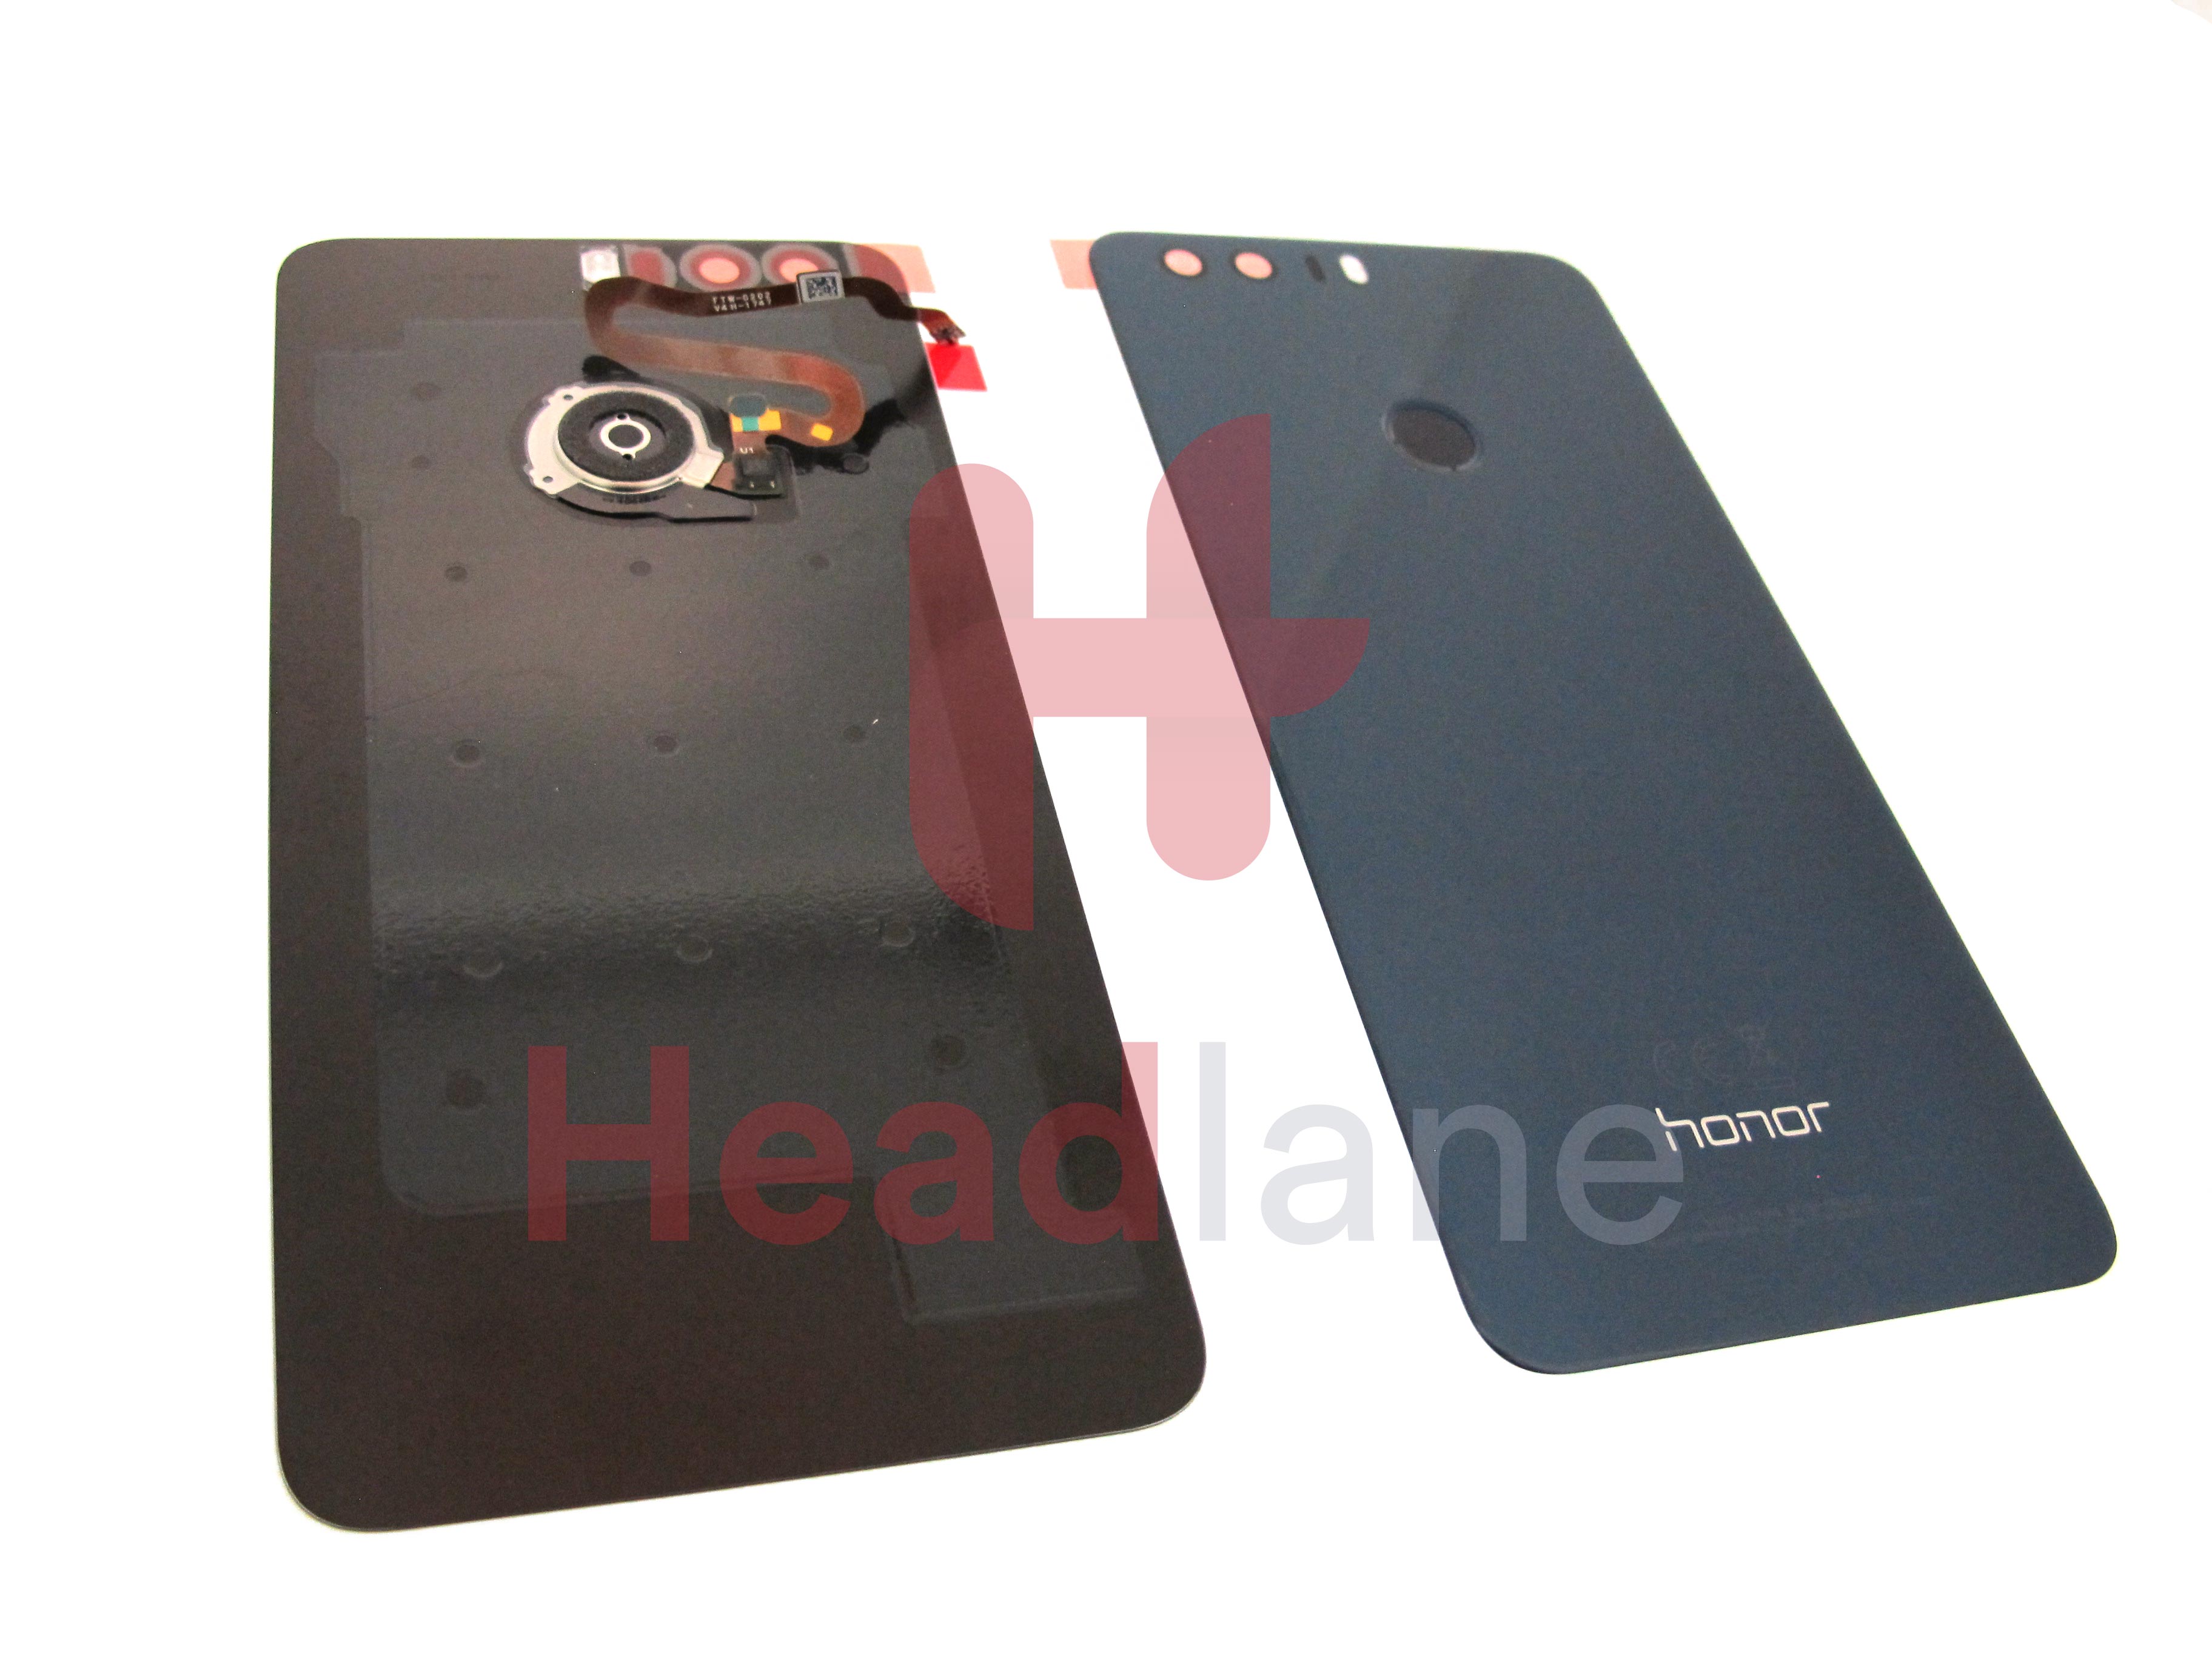 Huawei Honor 8 Back / Battery Cover + Fingerprint Sensor - Blue